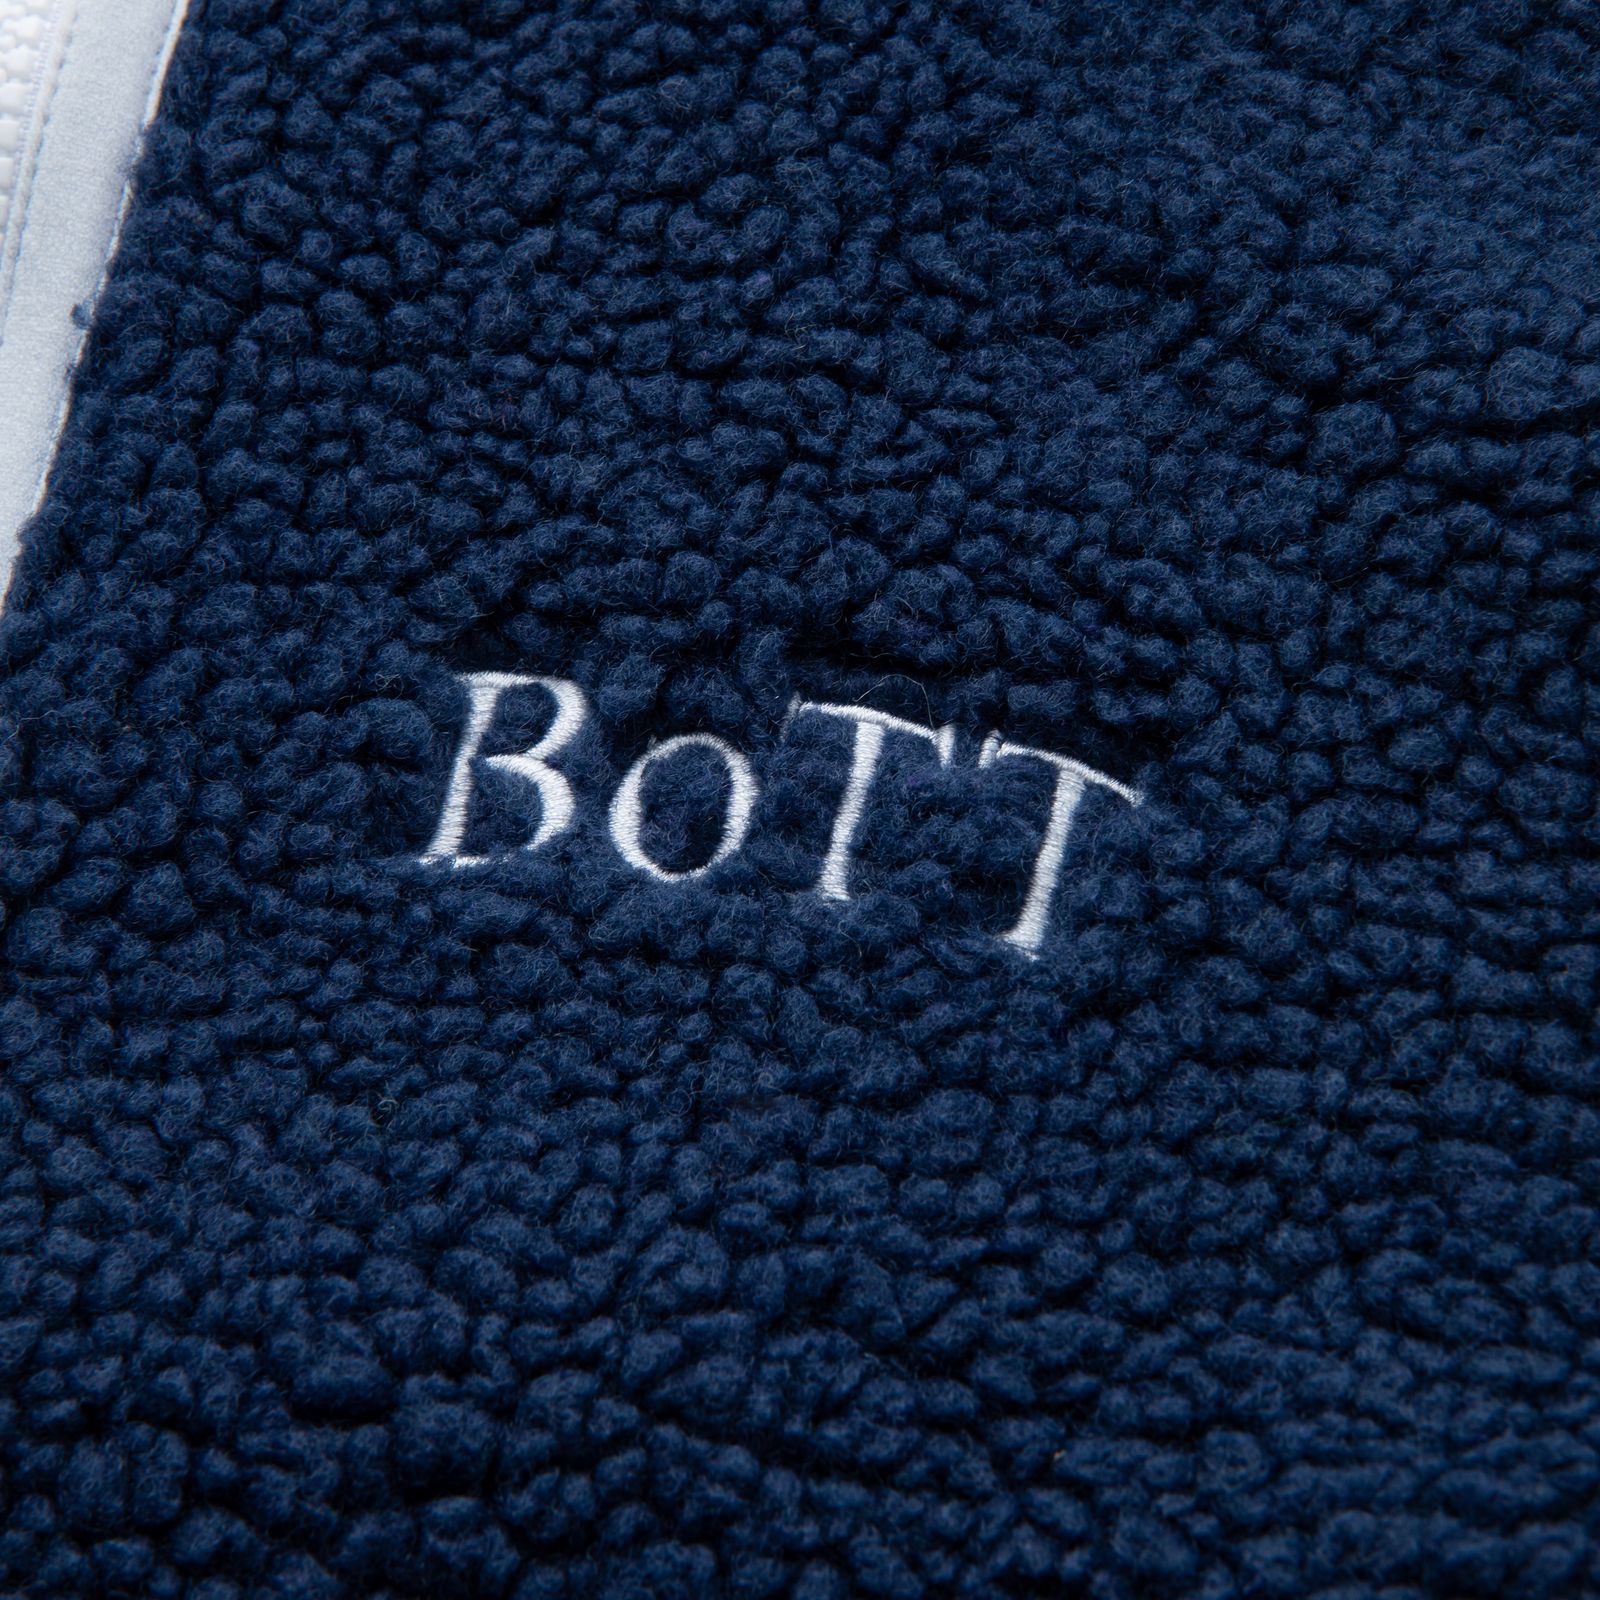 BoTT - 【残り一点】Full Zip Fleece Vest | ACRMTSM ONLINE STORE